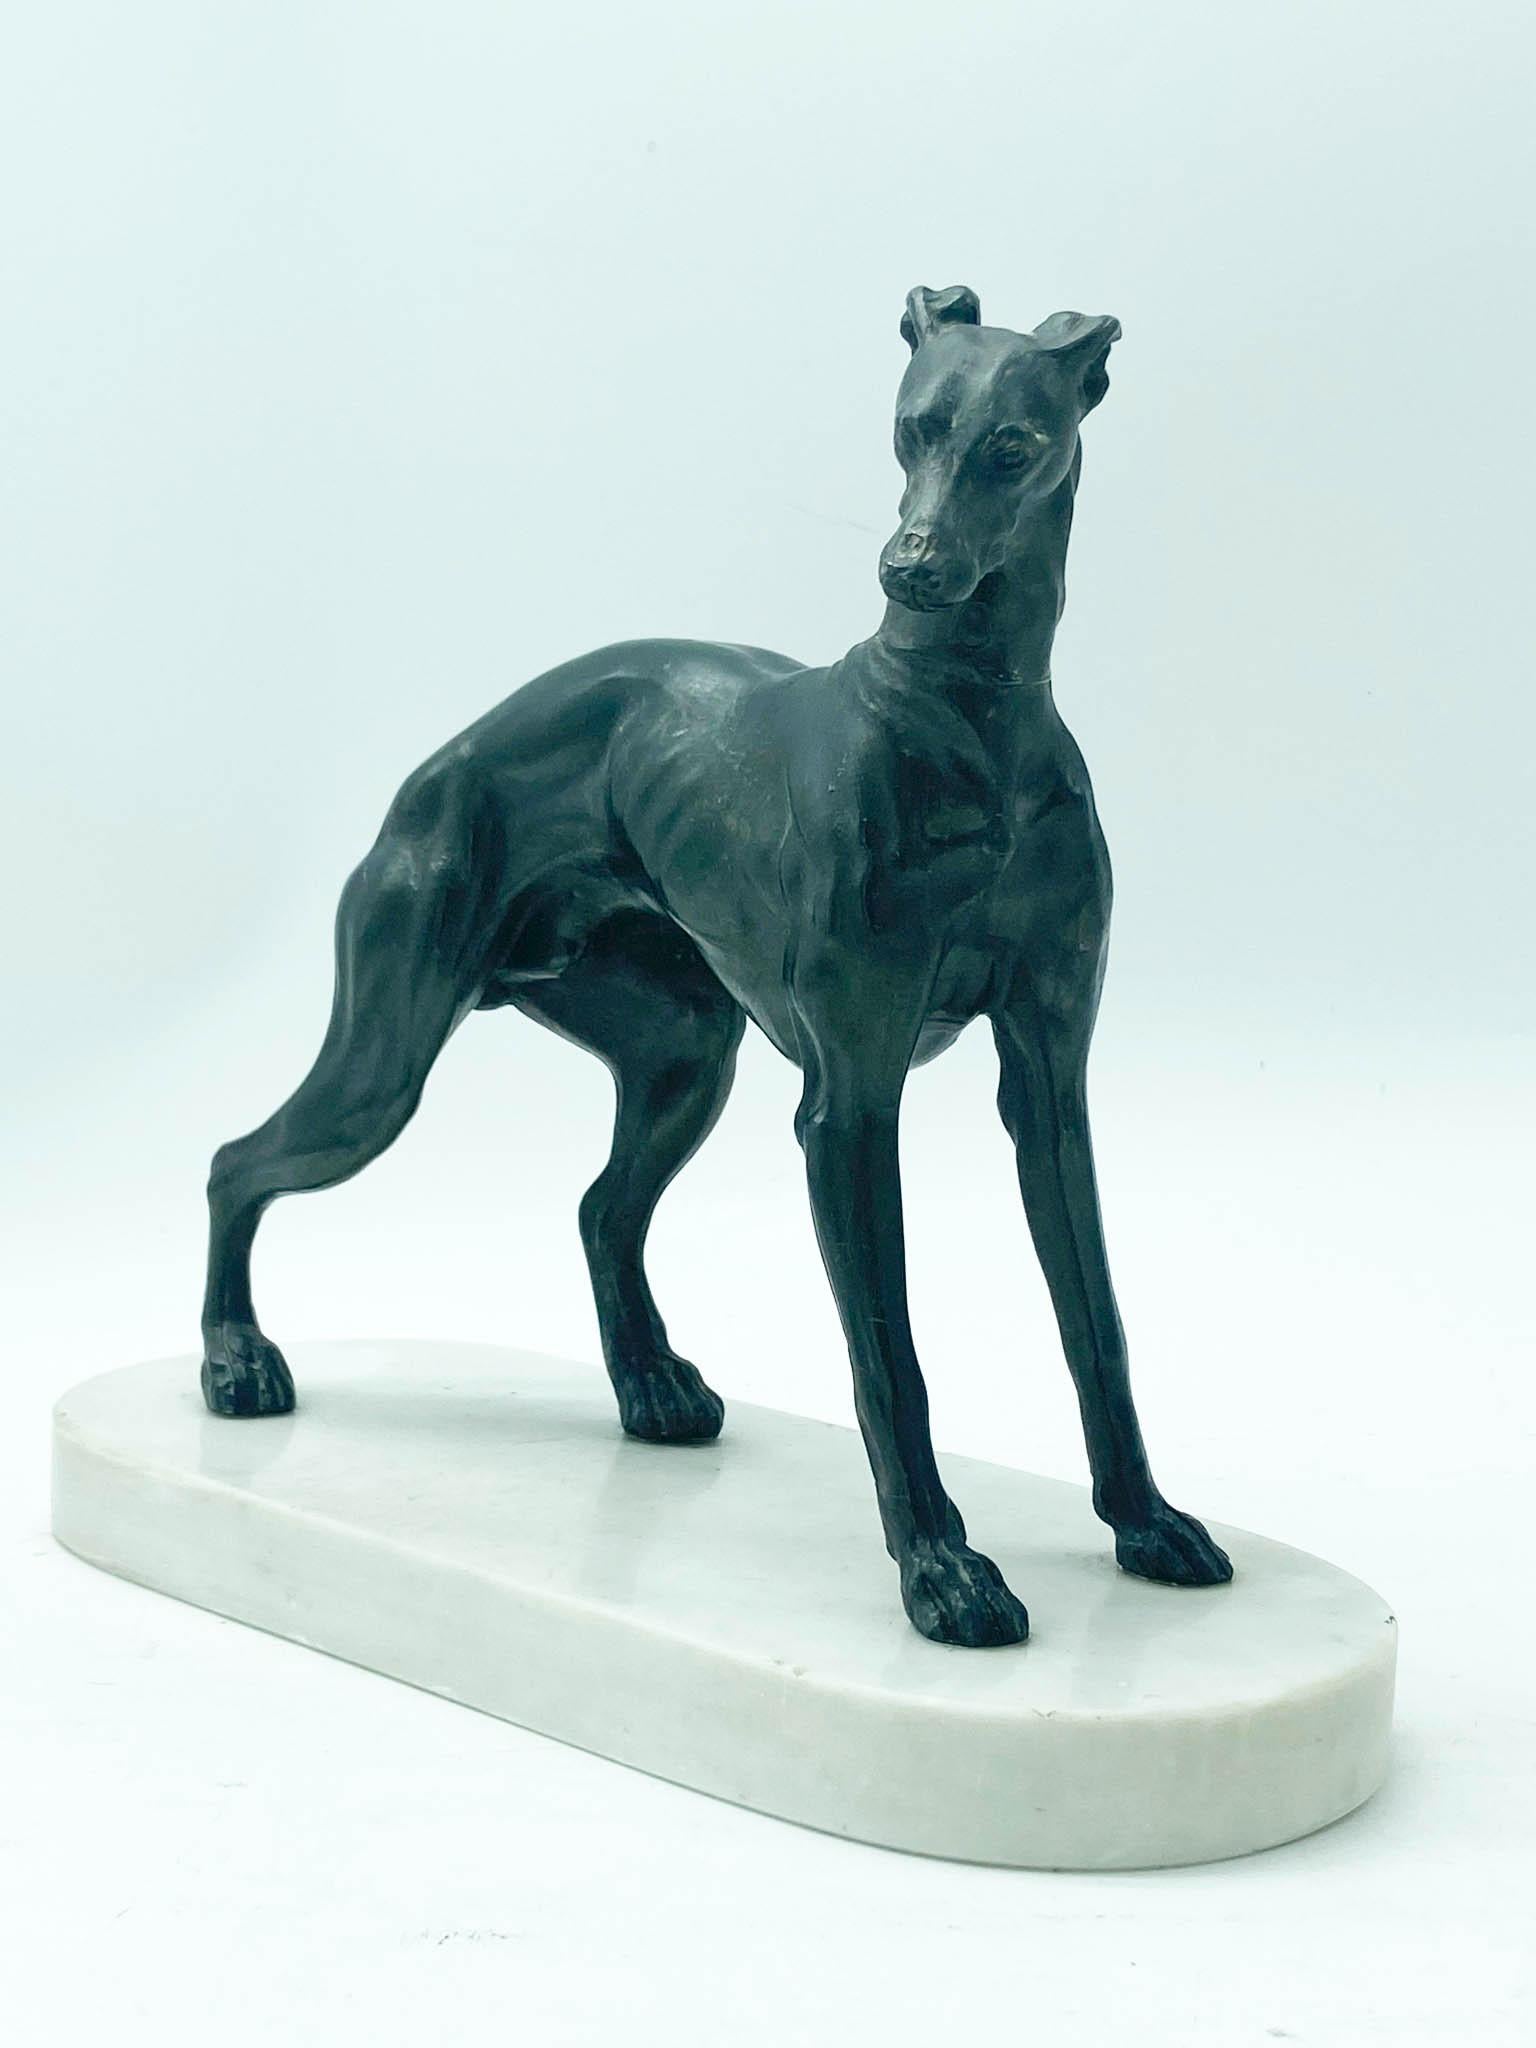 Sculpture en bronze représentant un beau chien alerte et élégant sur une surface en marbre blanc. En excellent état avec une légère usure de la patine.